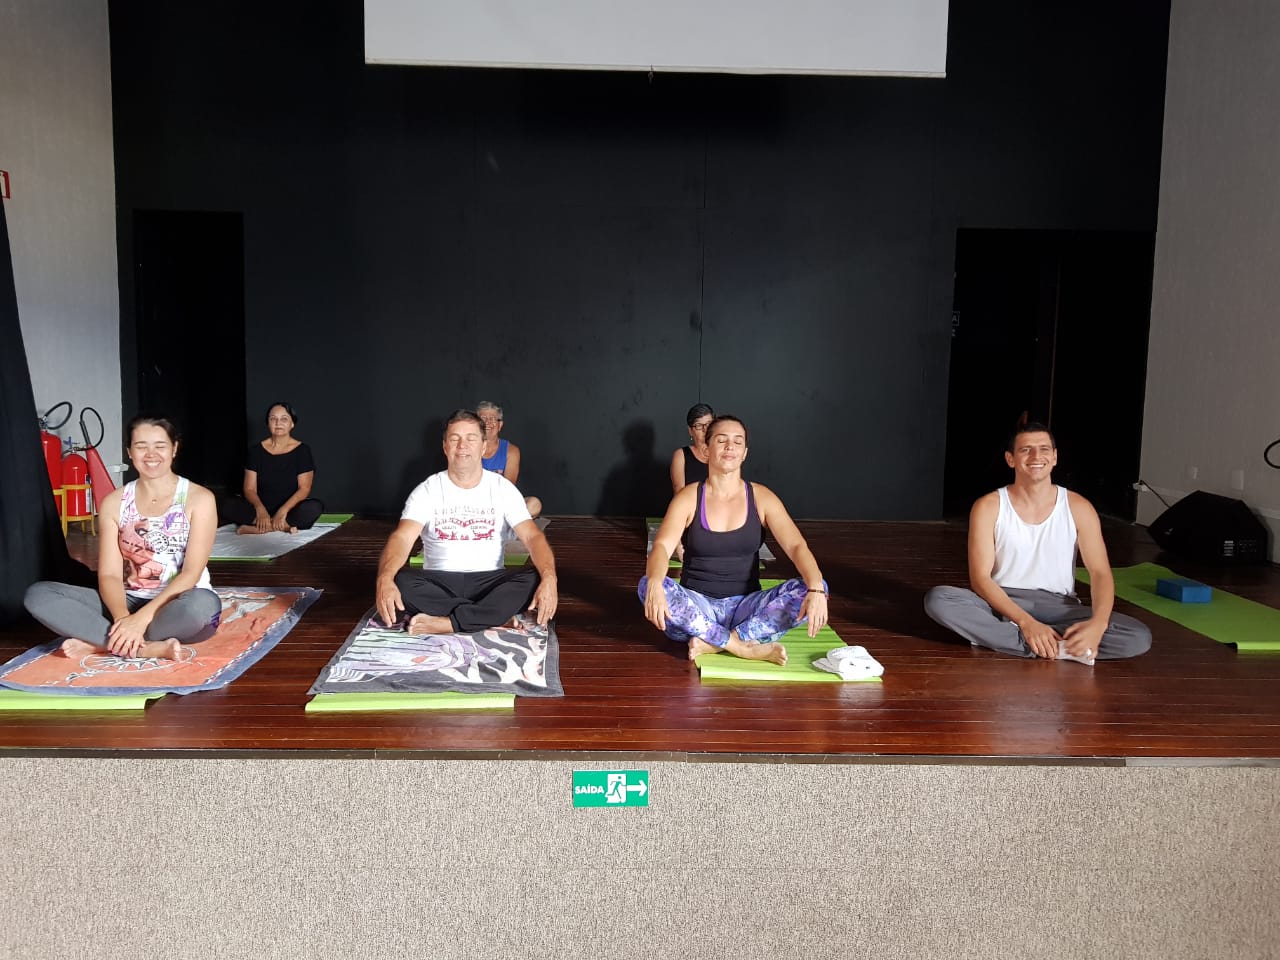 Primeira turma inaugura aula de pilates e ioga, na subsede, em São Sebastião